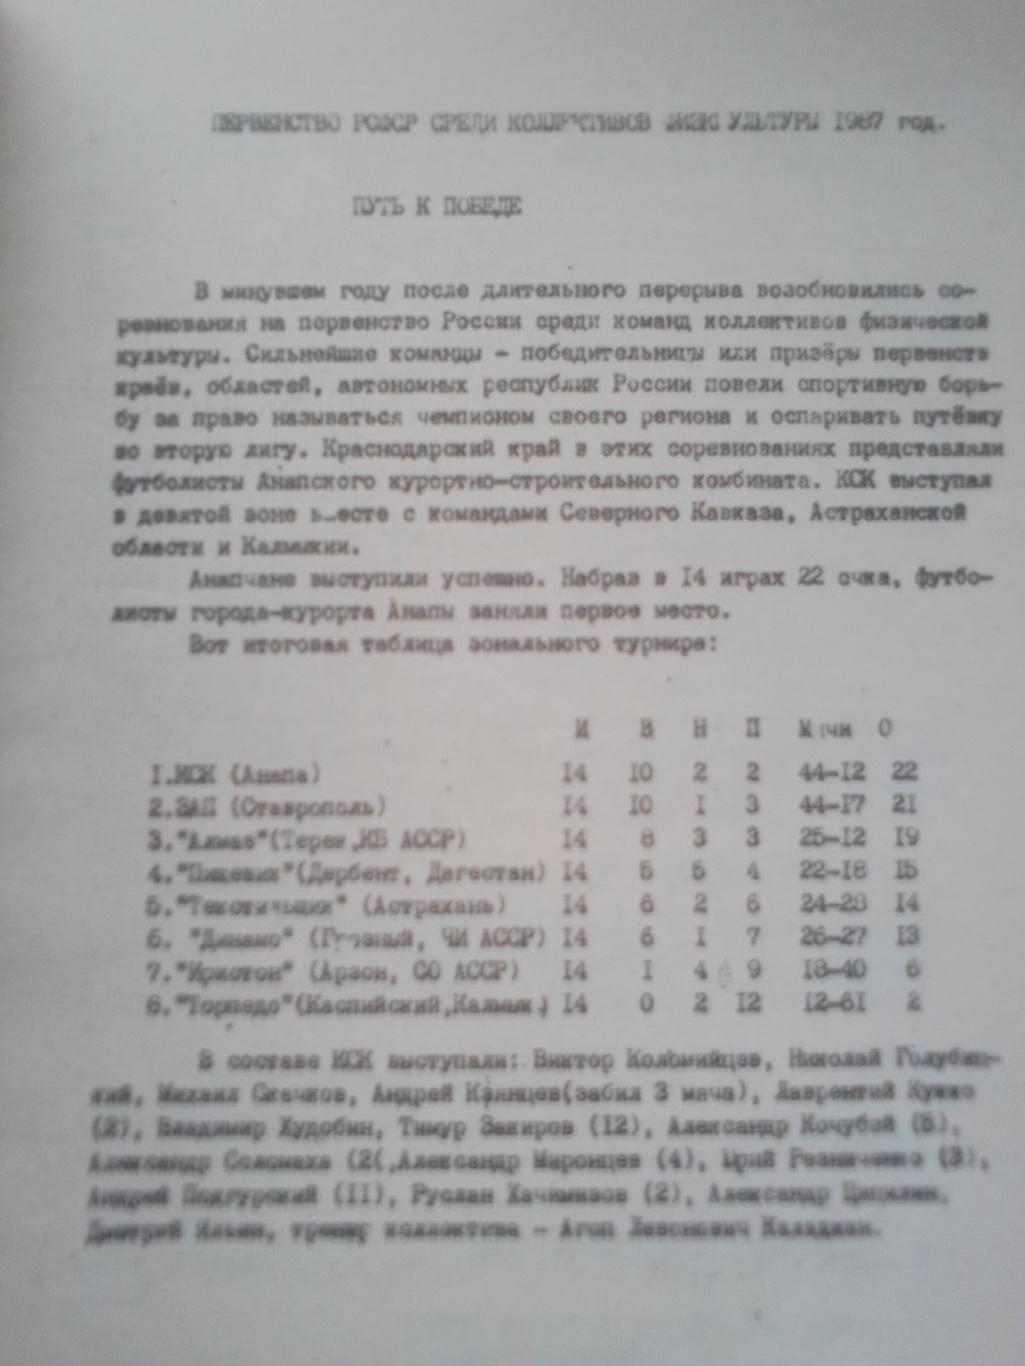 ФК Спартак Анапа. Программа сезона 1988 год. 1